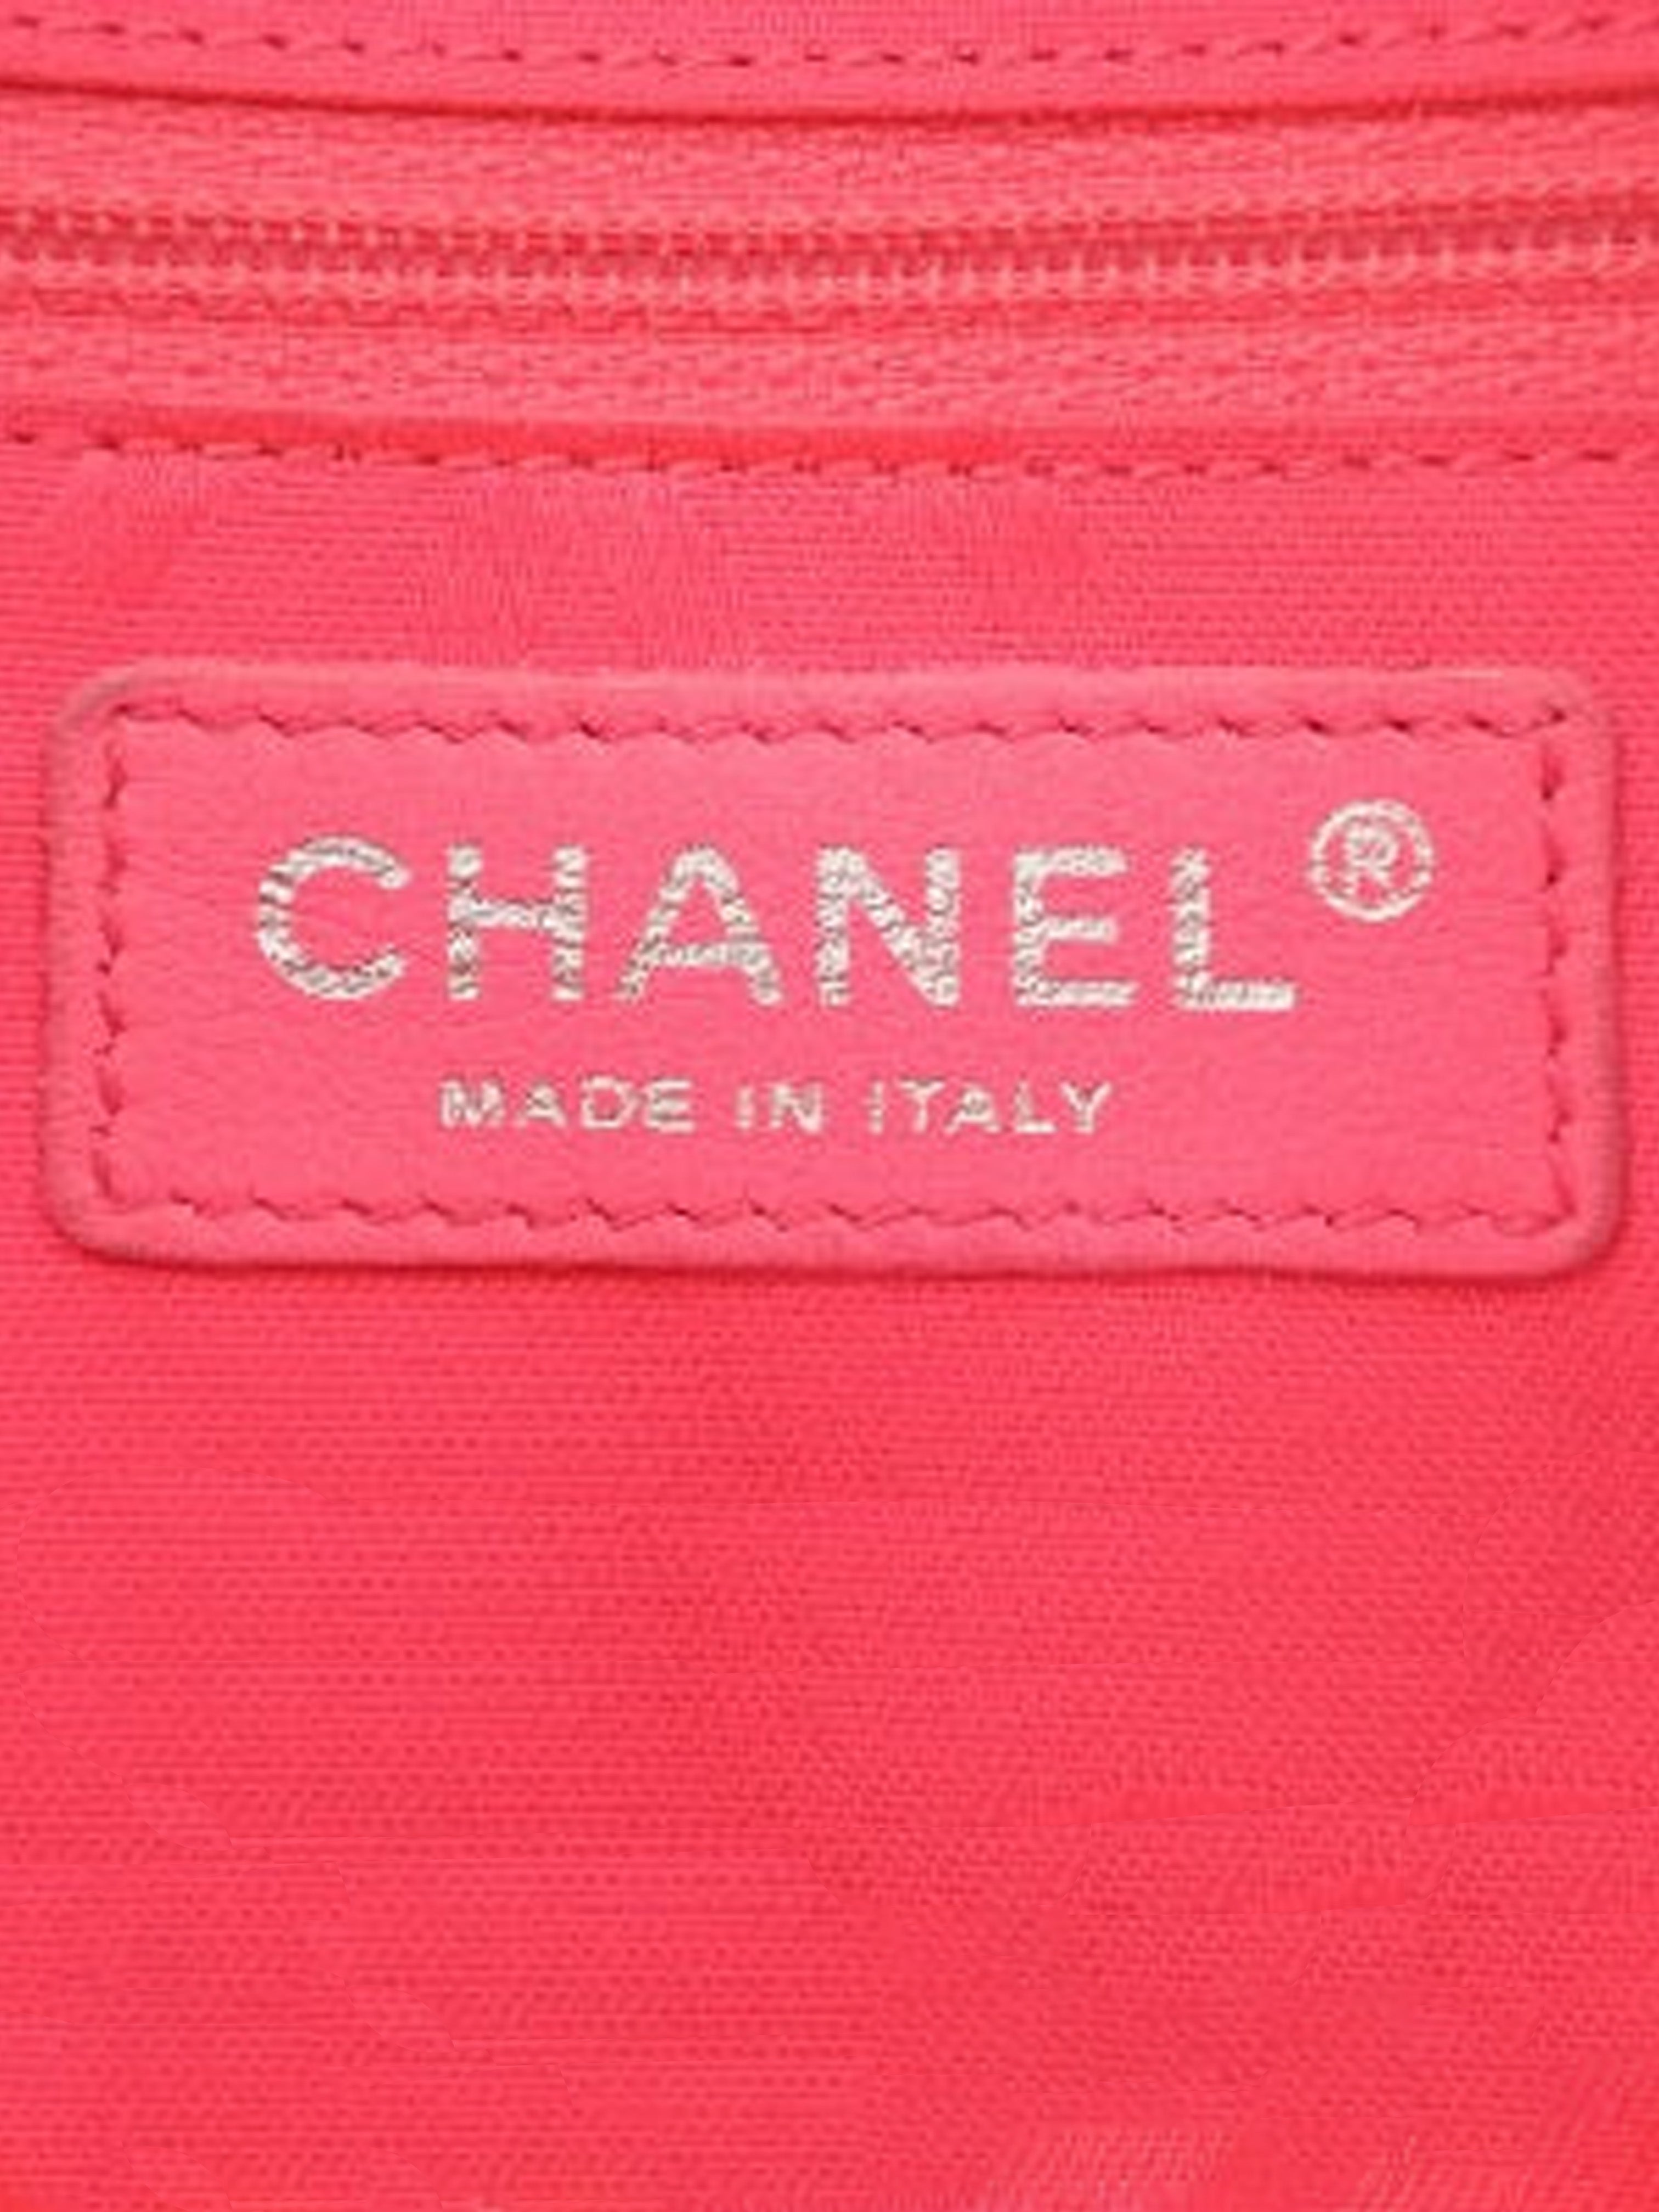 Chanel 2003 Black Cambon Shoulder Bag